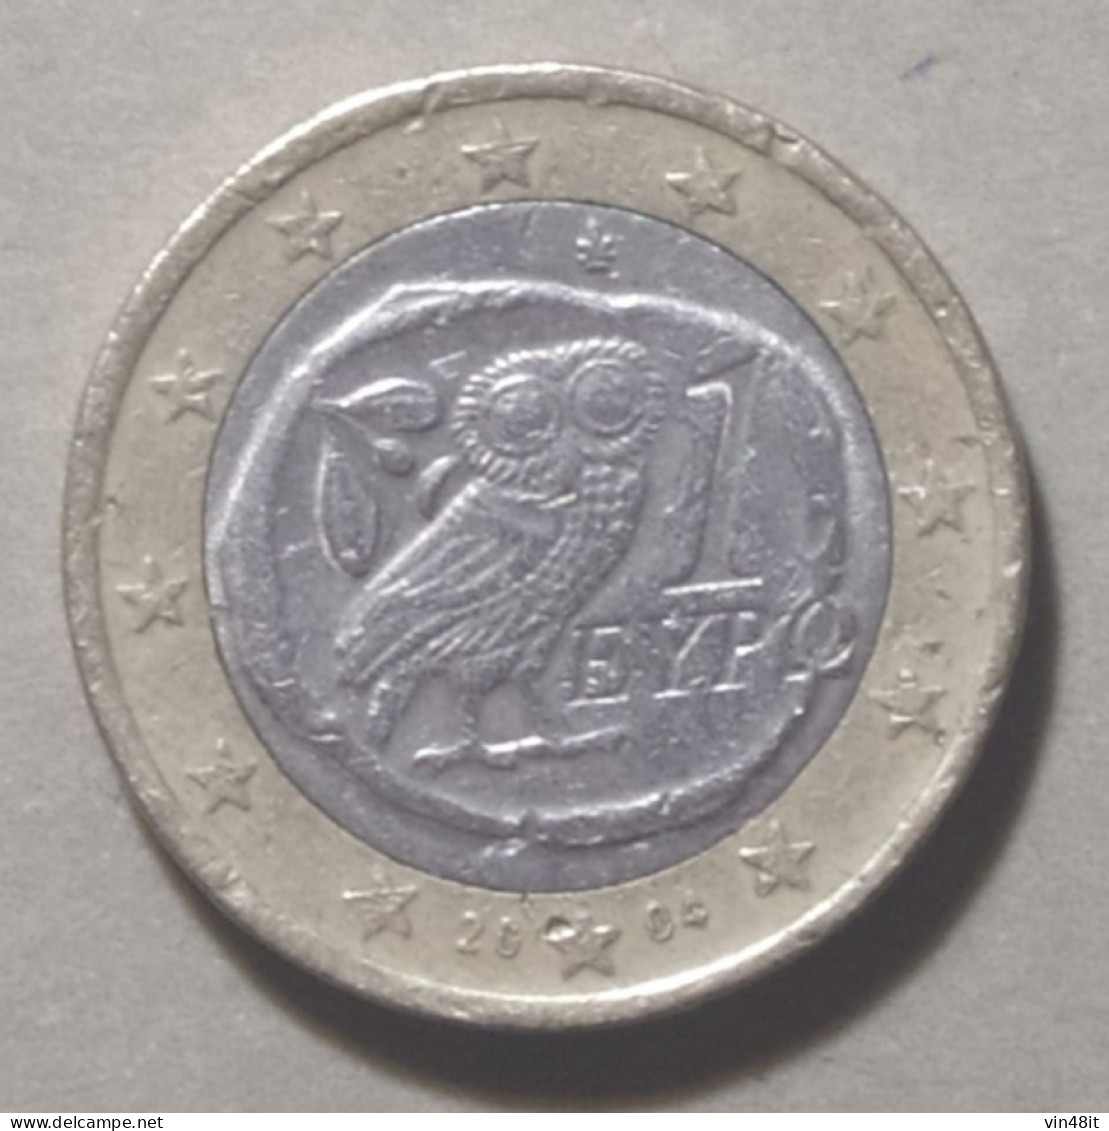 2004  - GRECIA - MONETA IN EURO  -  DEL VALORE DI 1,00  EURO  -  USATA - Grèce